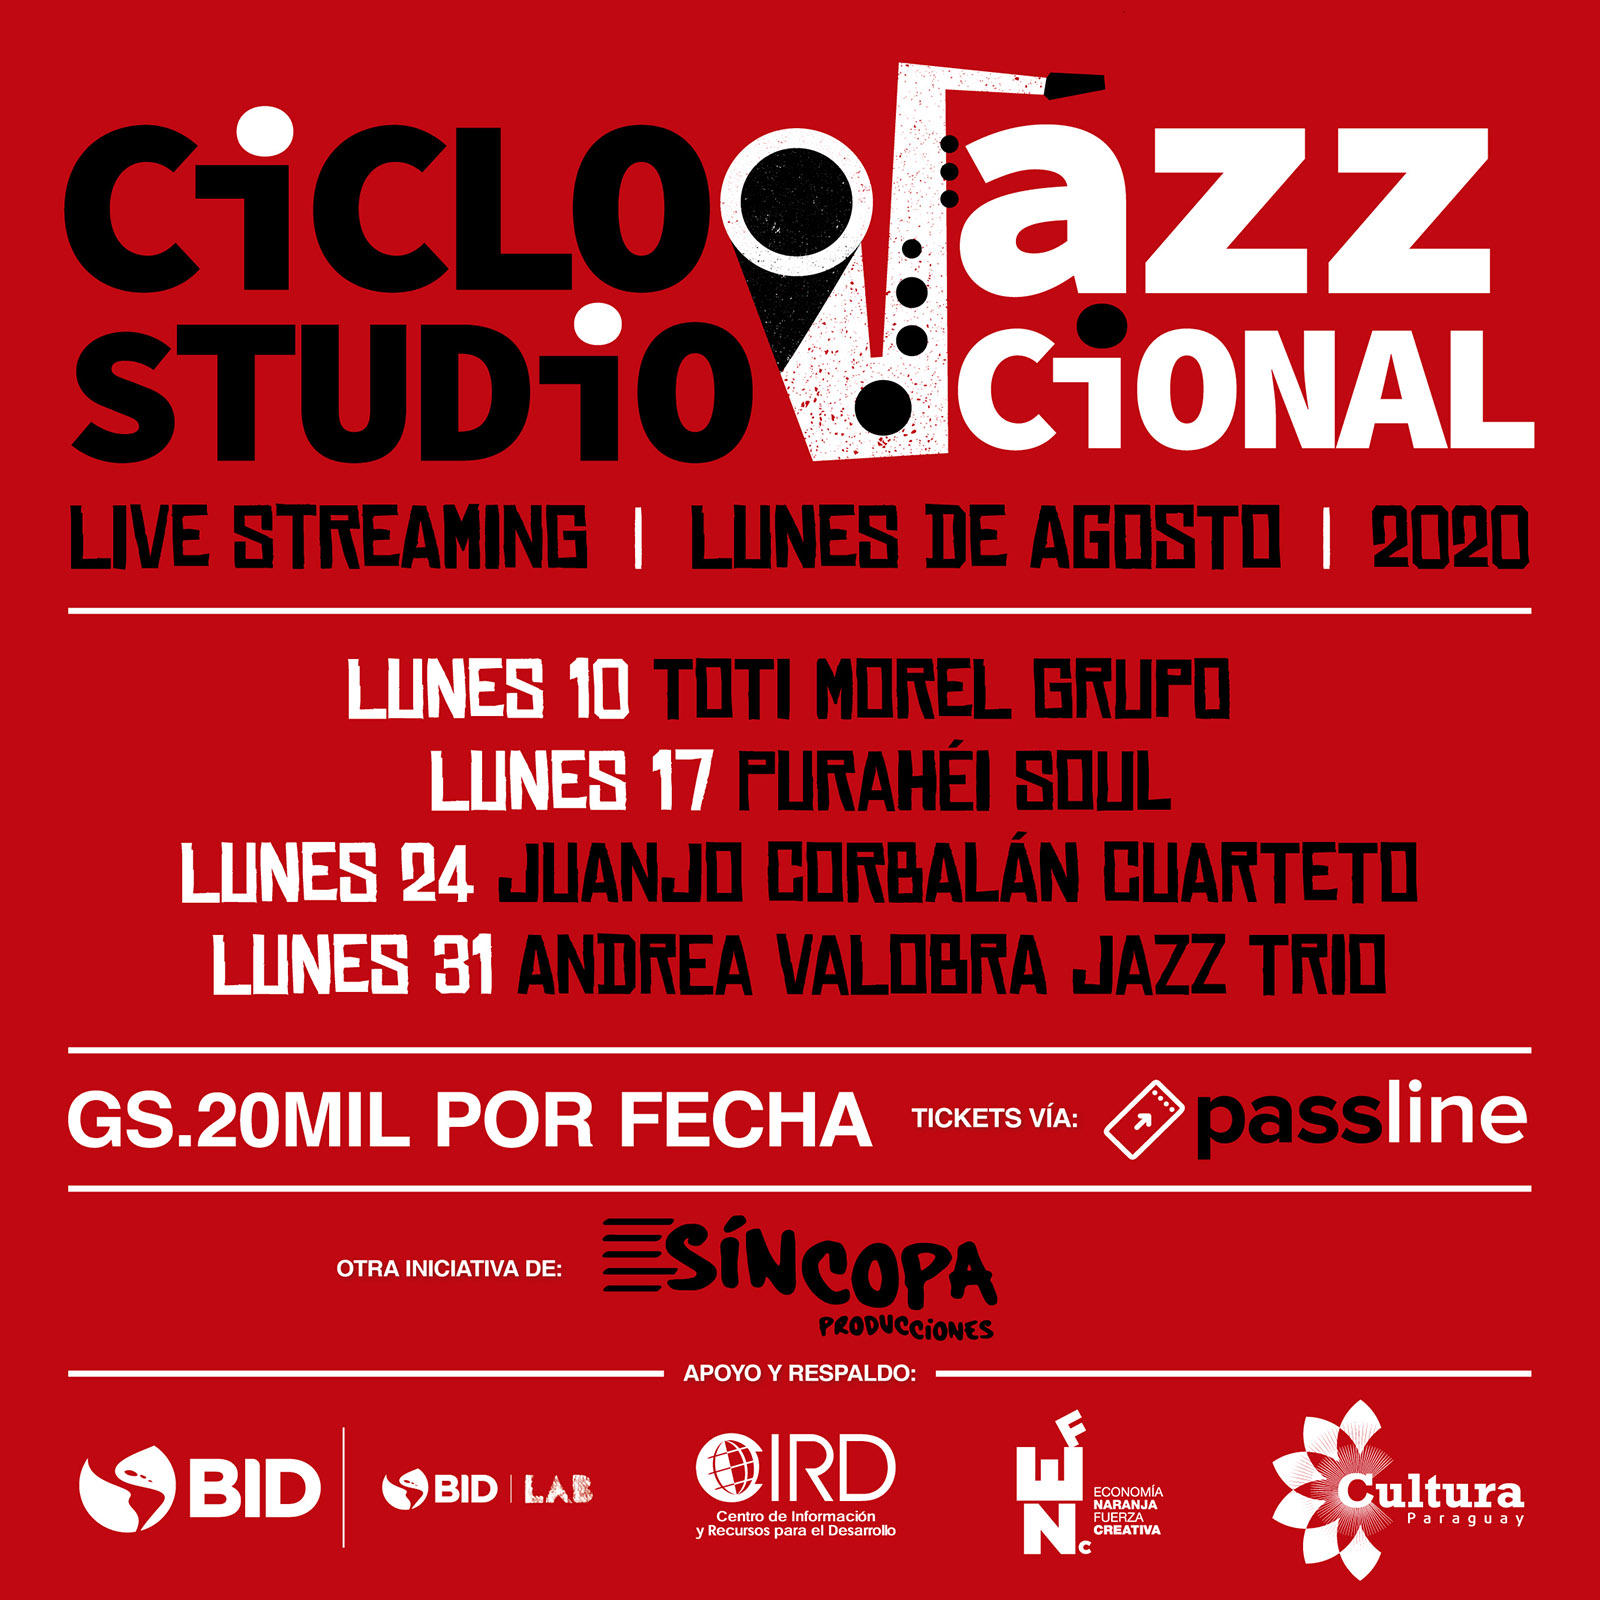 Ciclo “Studio Jazzcional” llega al público amante del jazz a través del streaming en vivo imagen